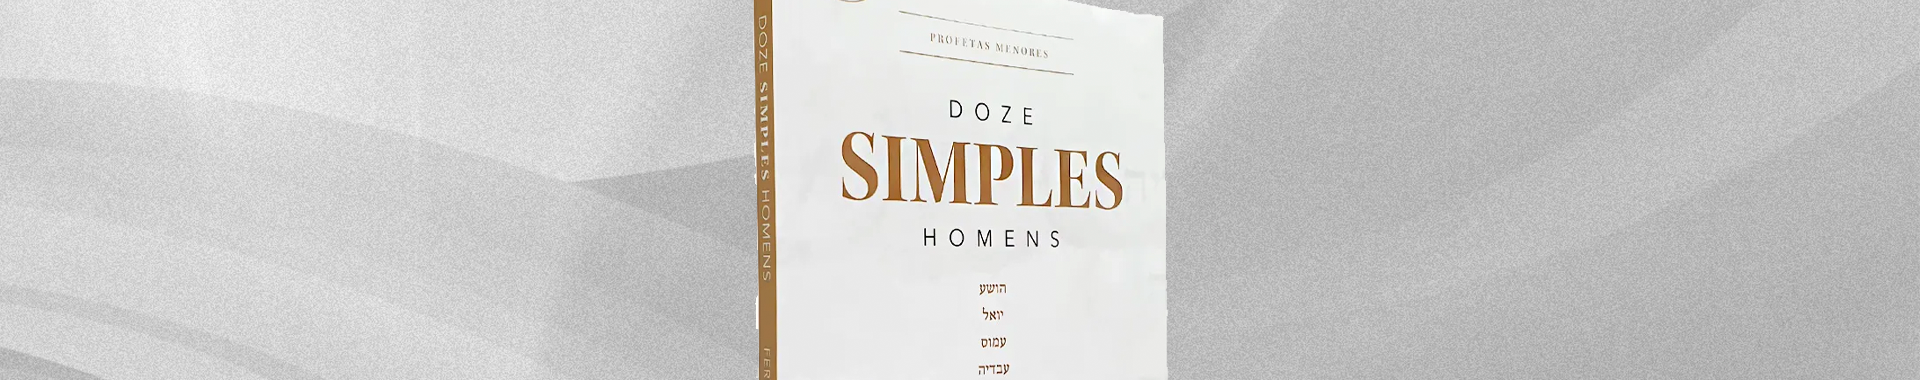 Doze simples homens